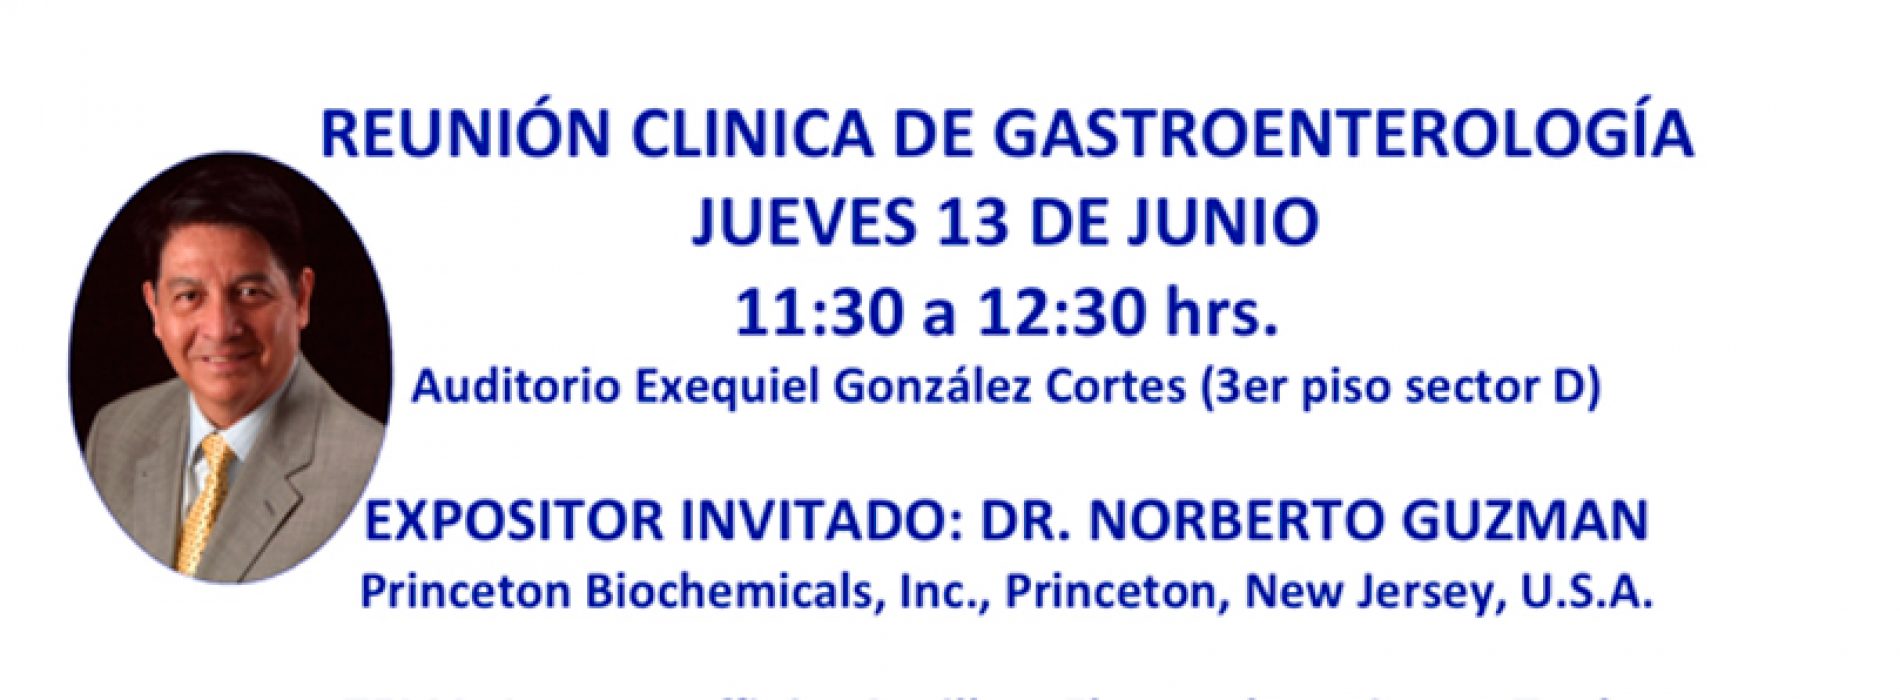 Clinic of Gastroenterology meeting - Thursday, June 13